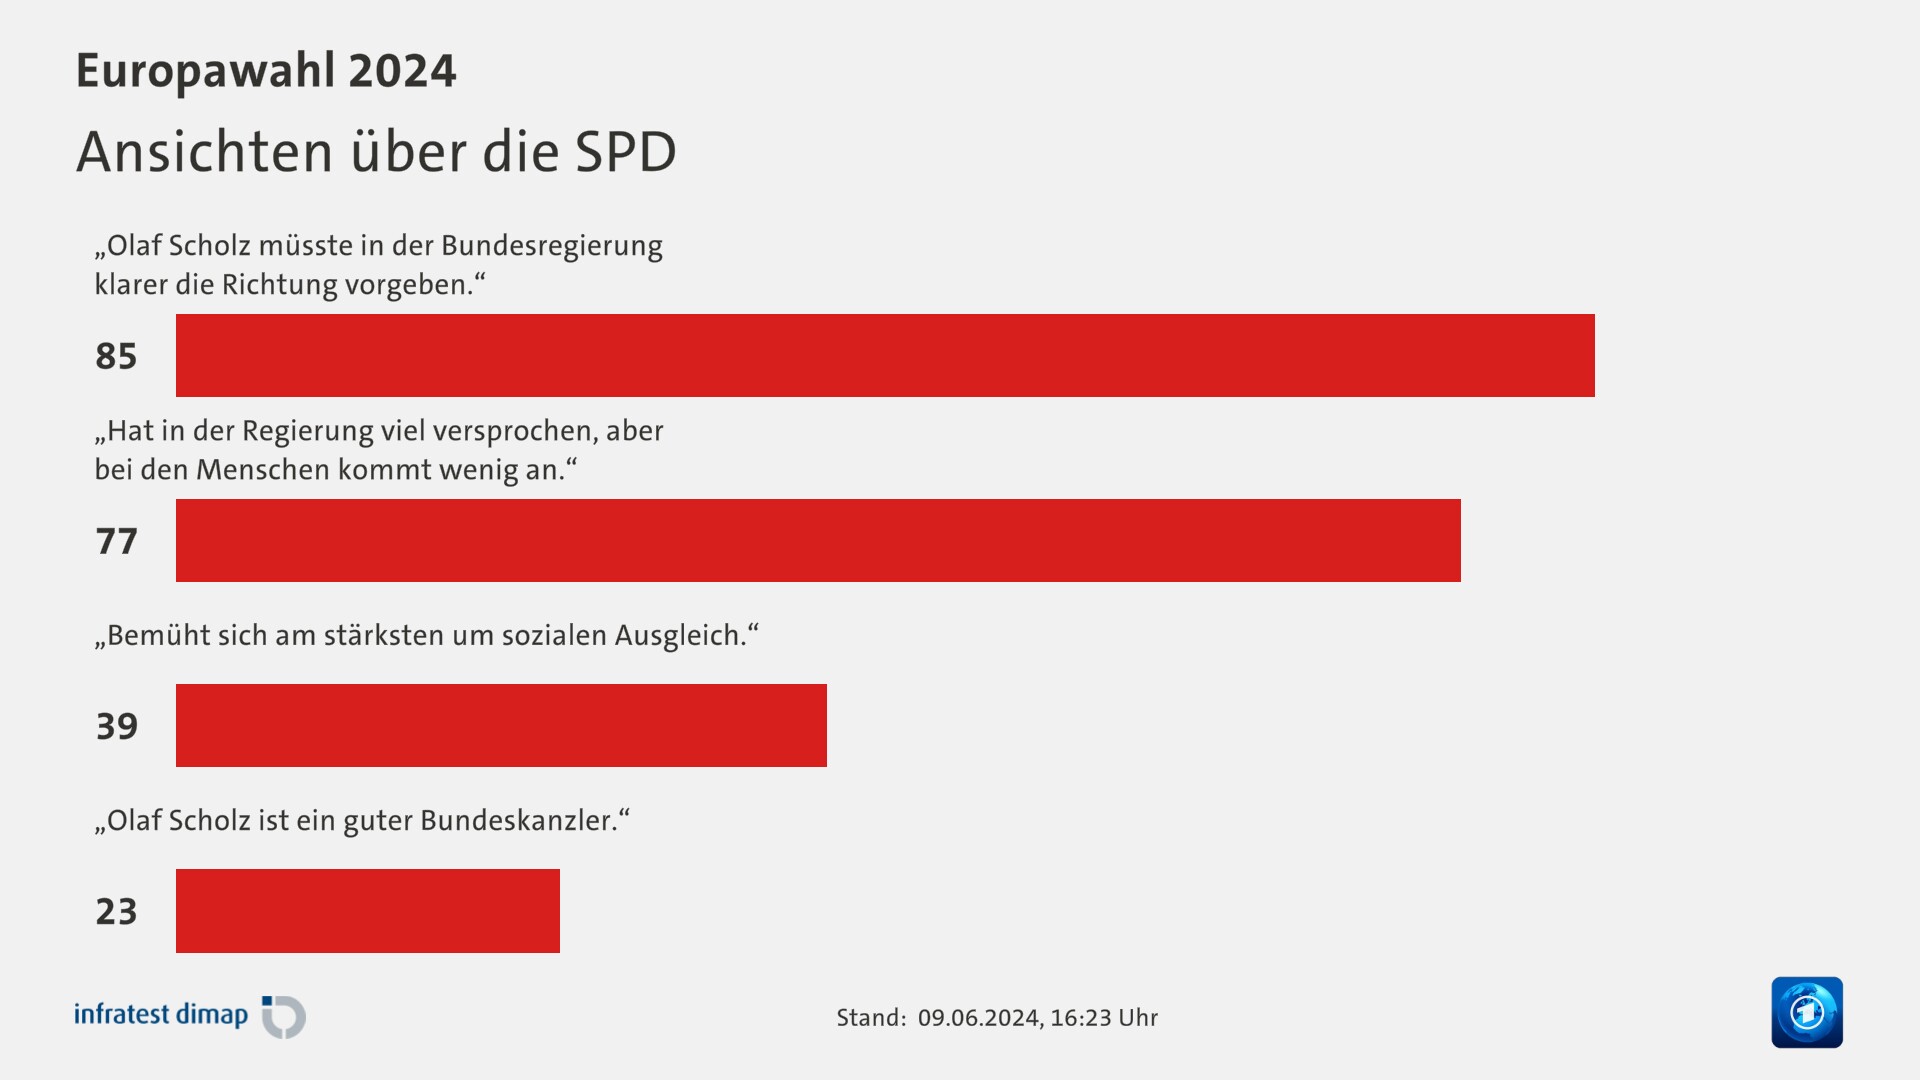 Ansichten über die SPD